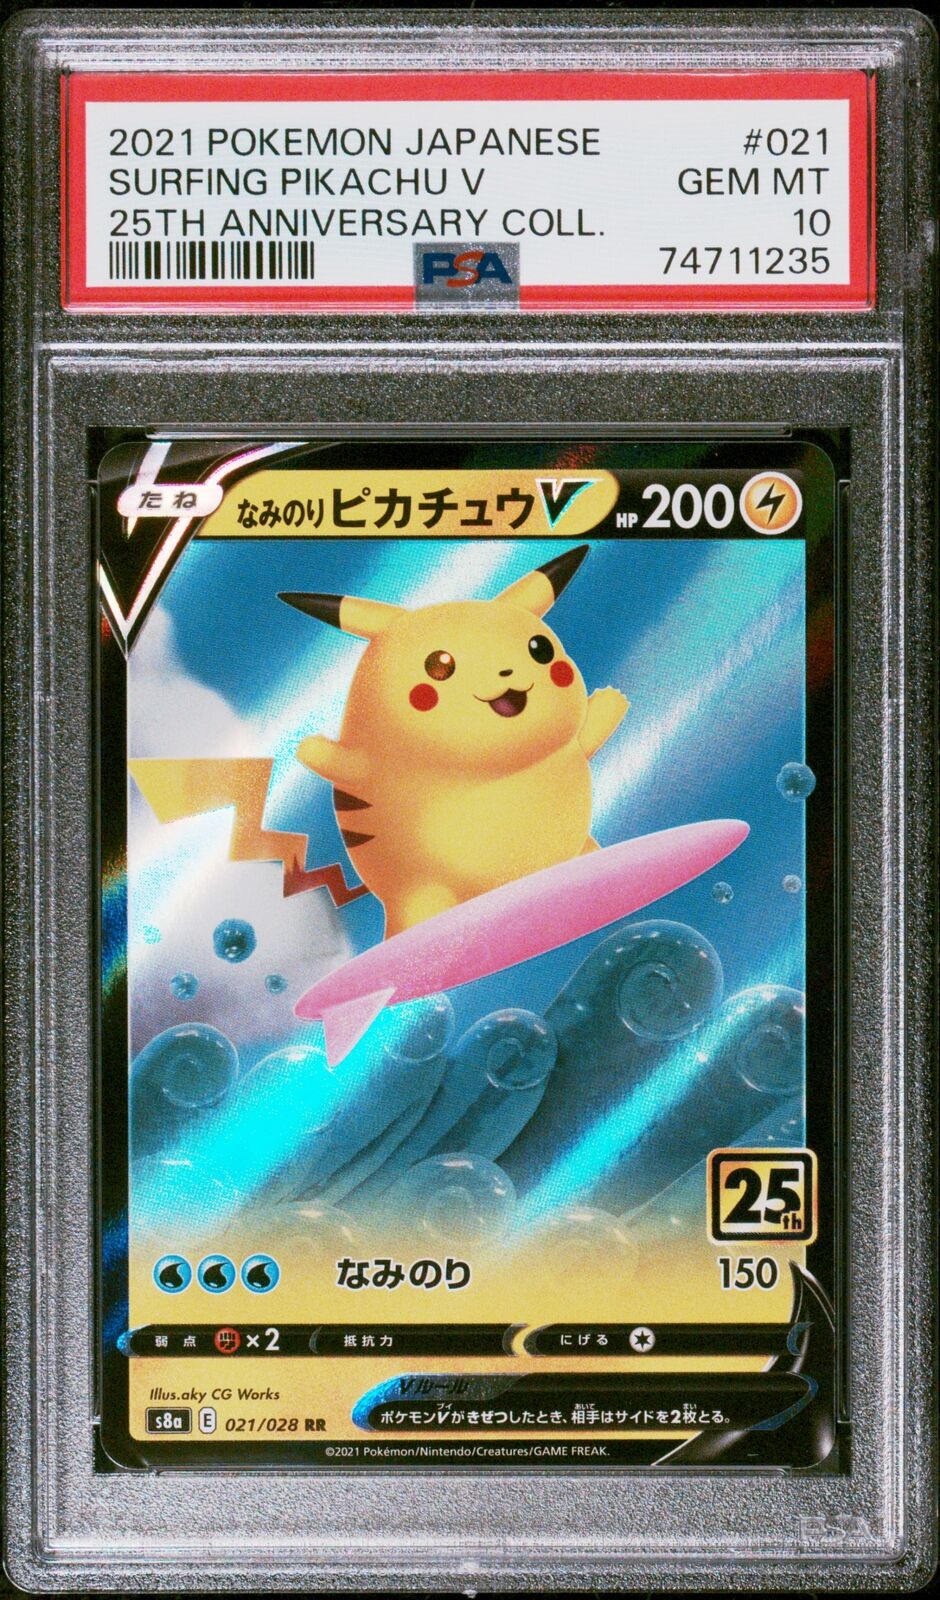 MINT Condition Japanese Rayquaza GX 098/150 Holo/shiny Pokemon 